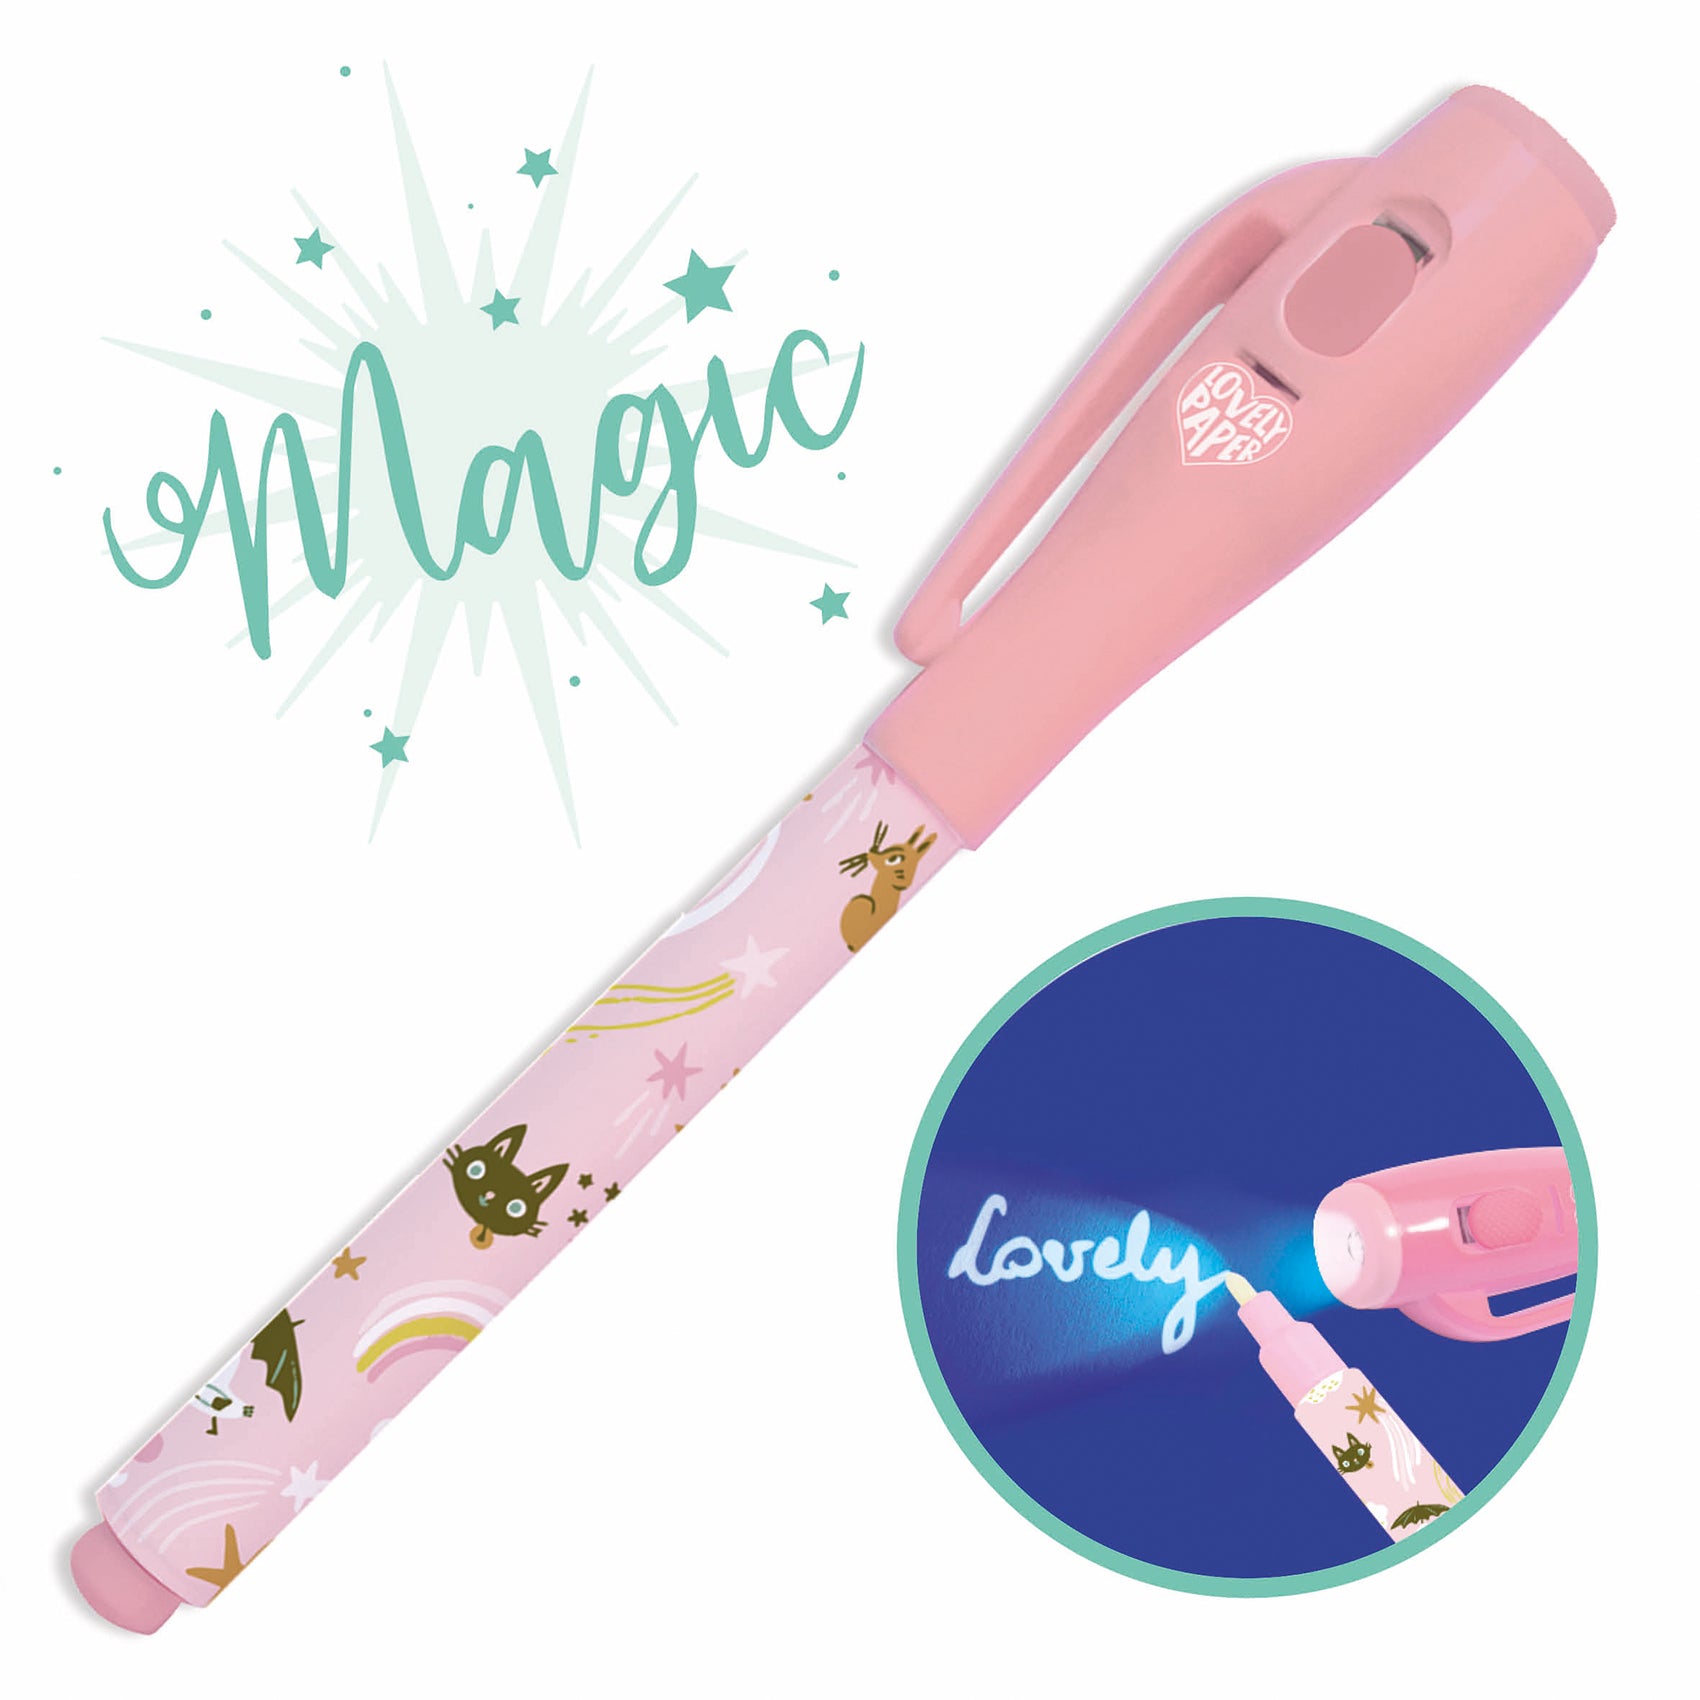 DJECO magic pen Lucille – PSiloveyou